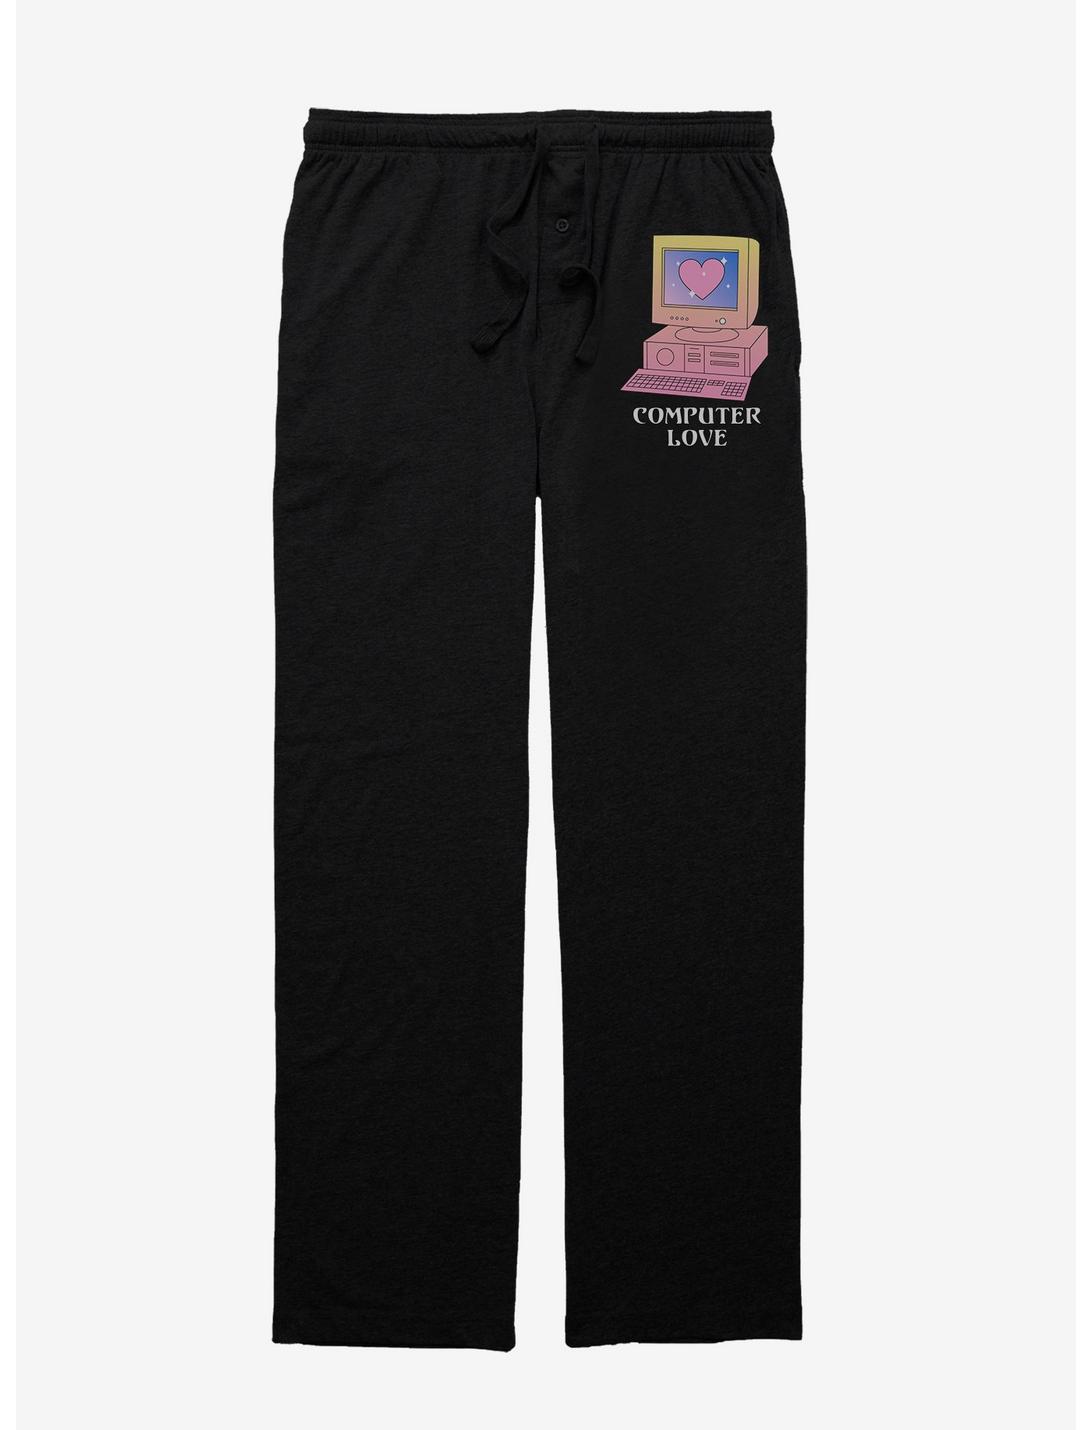 Computer Love Pajama Pants, BLACK, hi-res